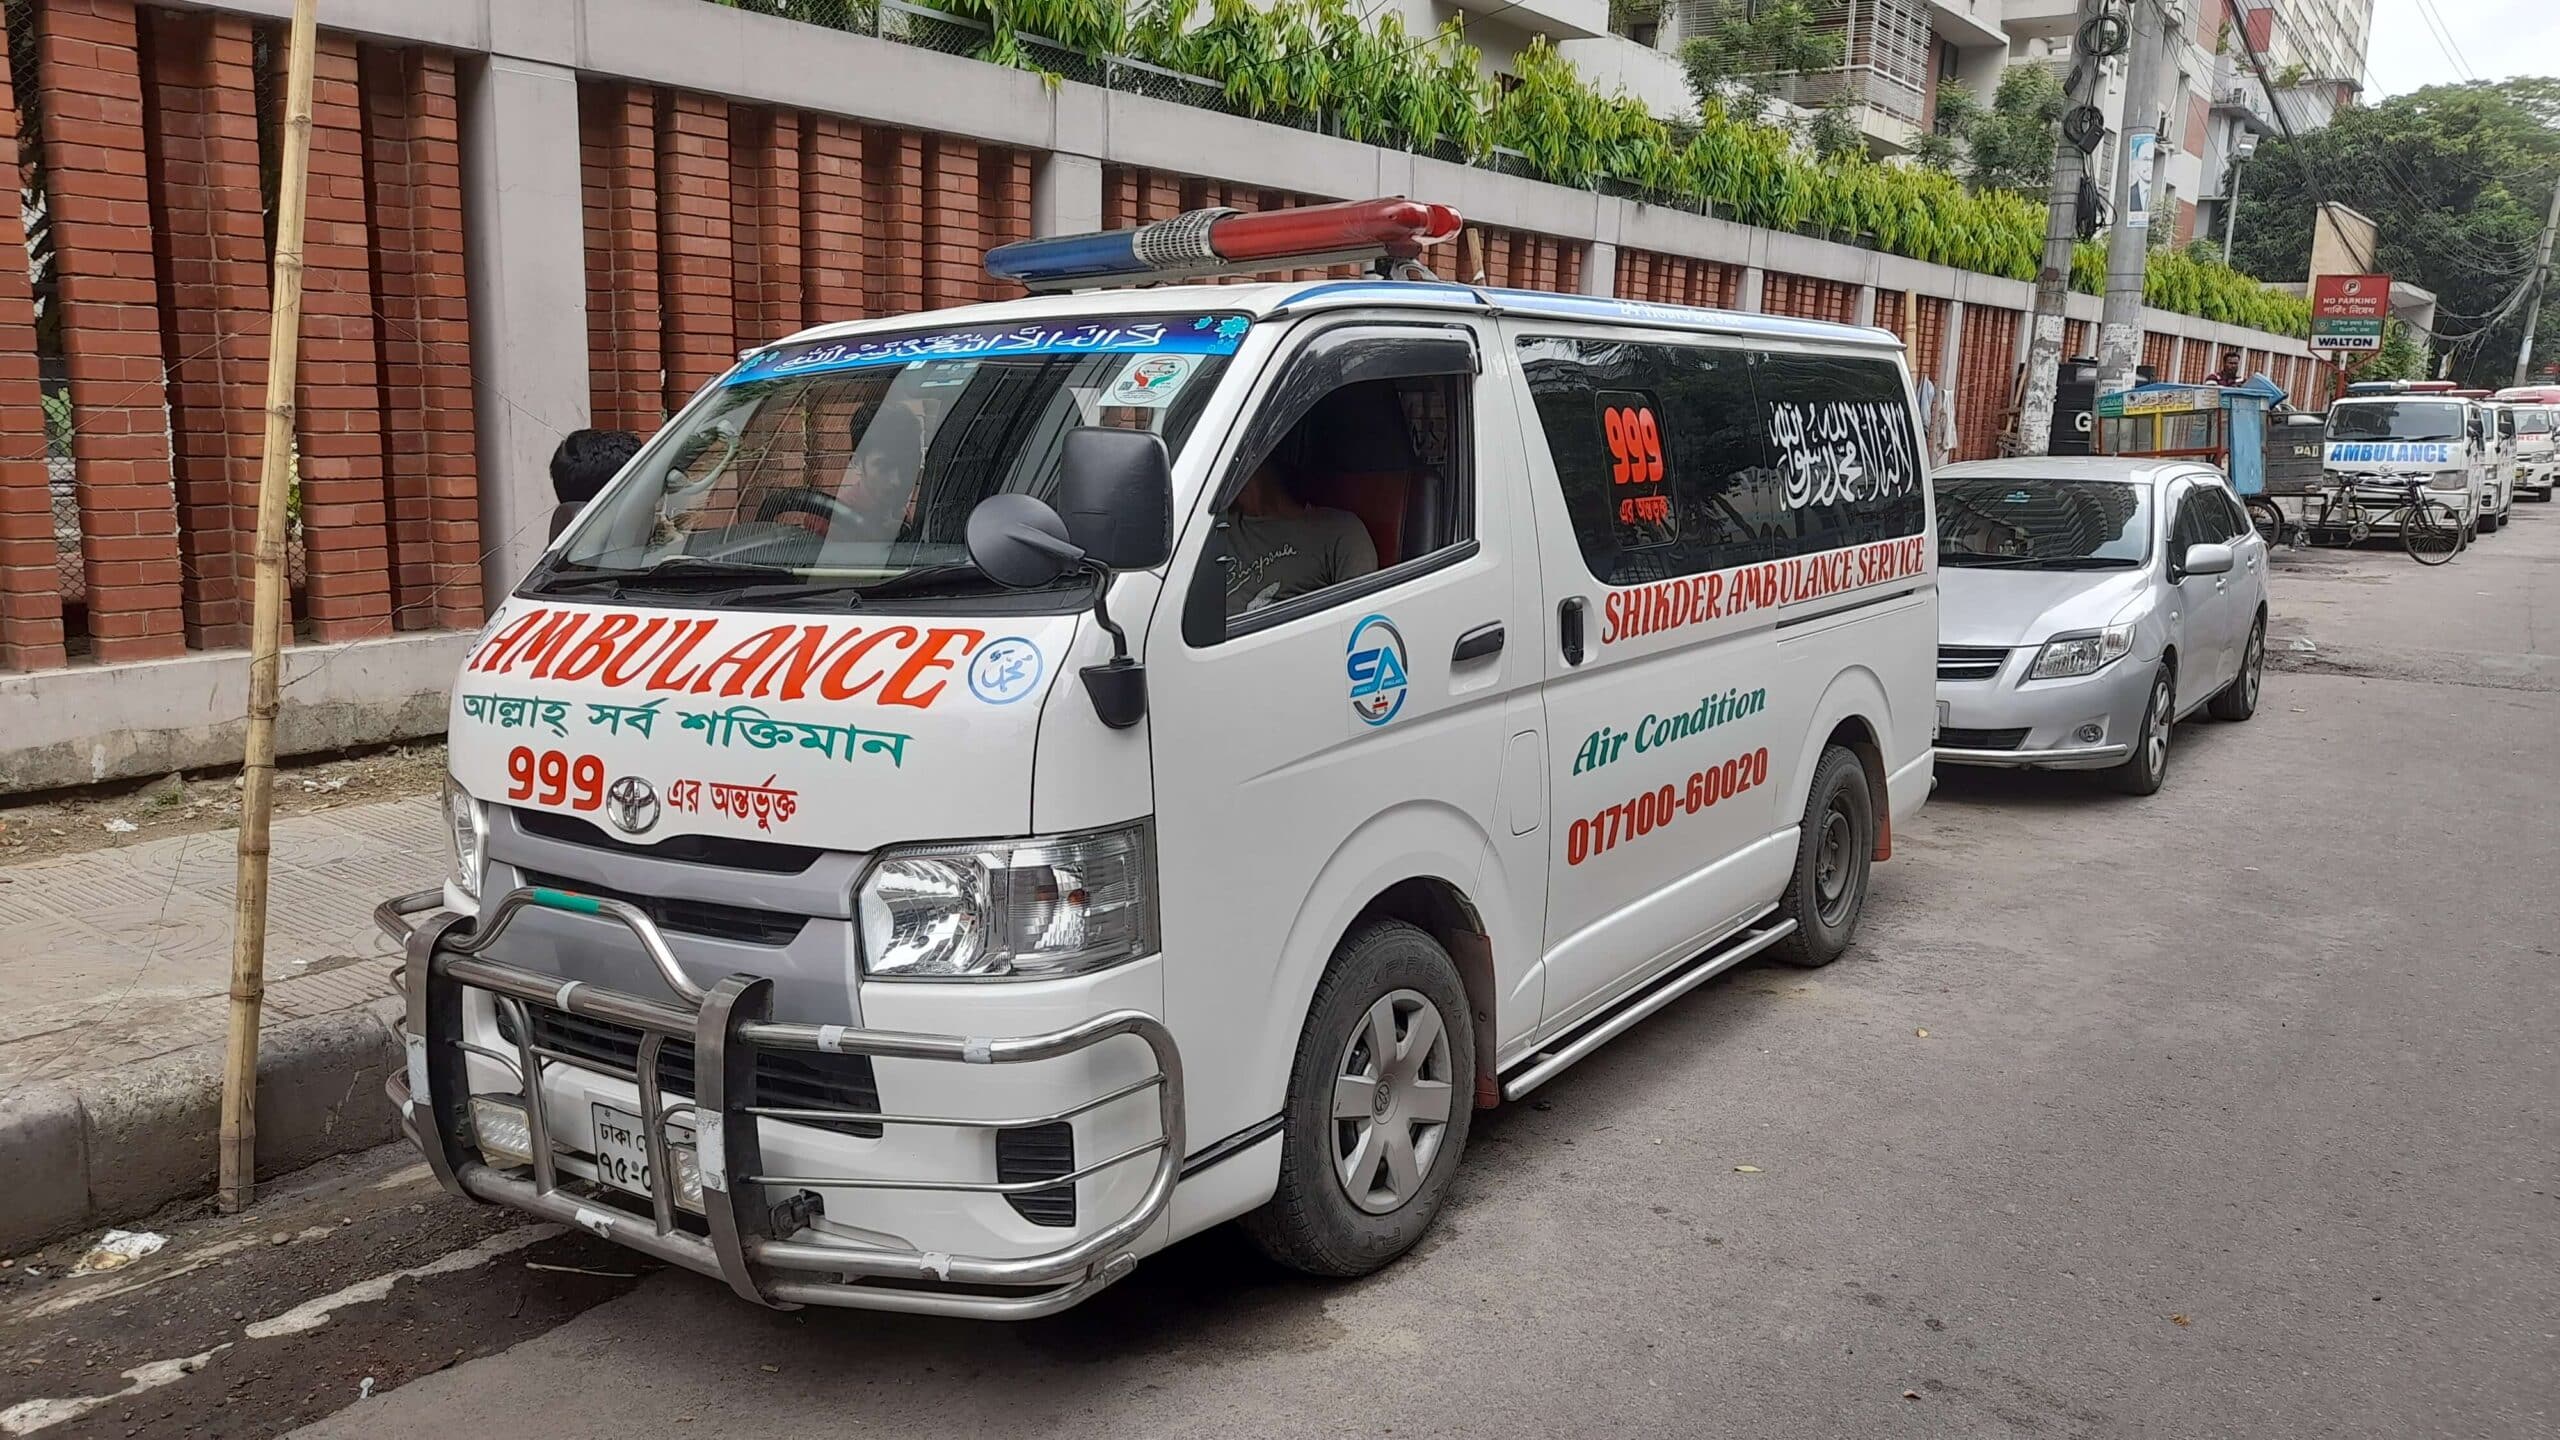 Monipur-para-ambulance-service